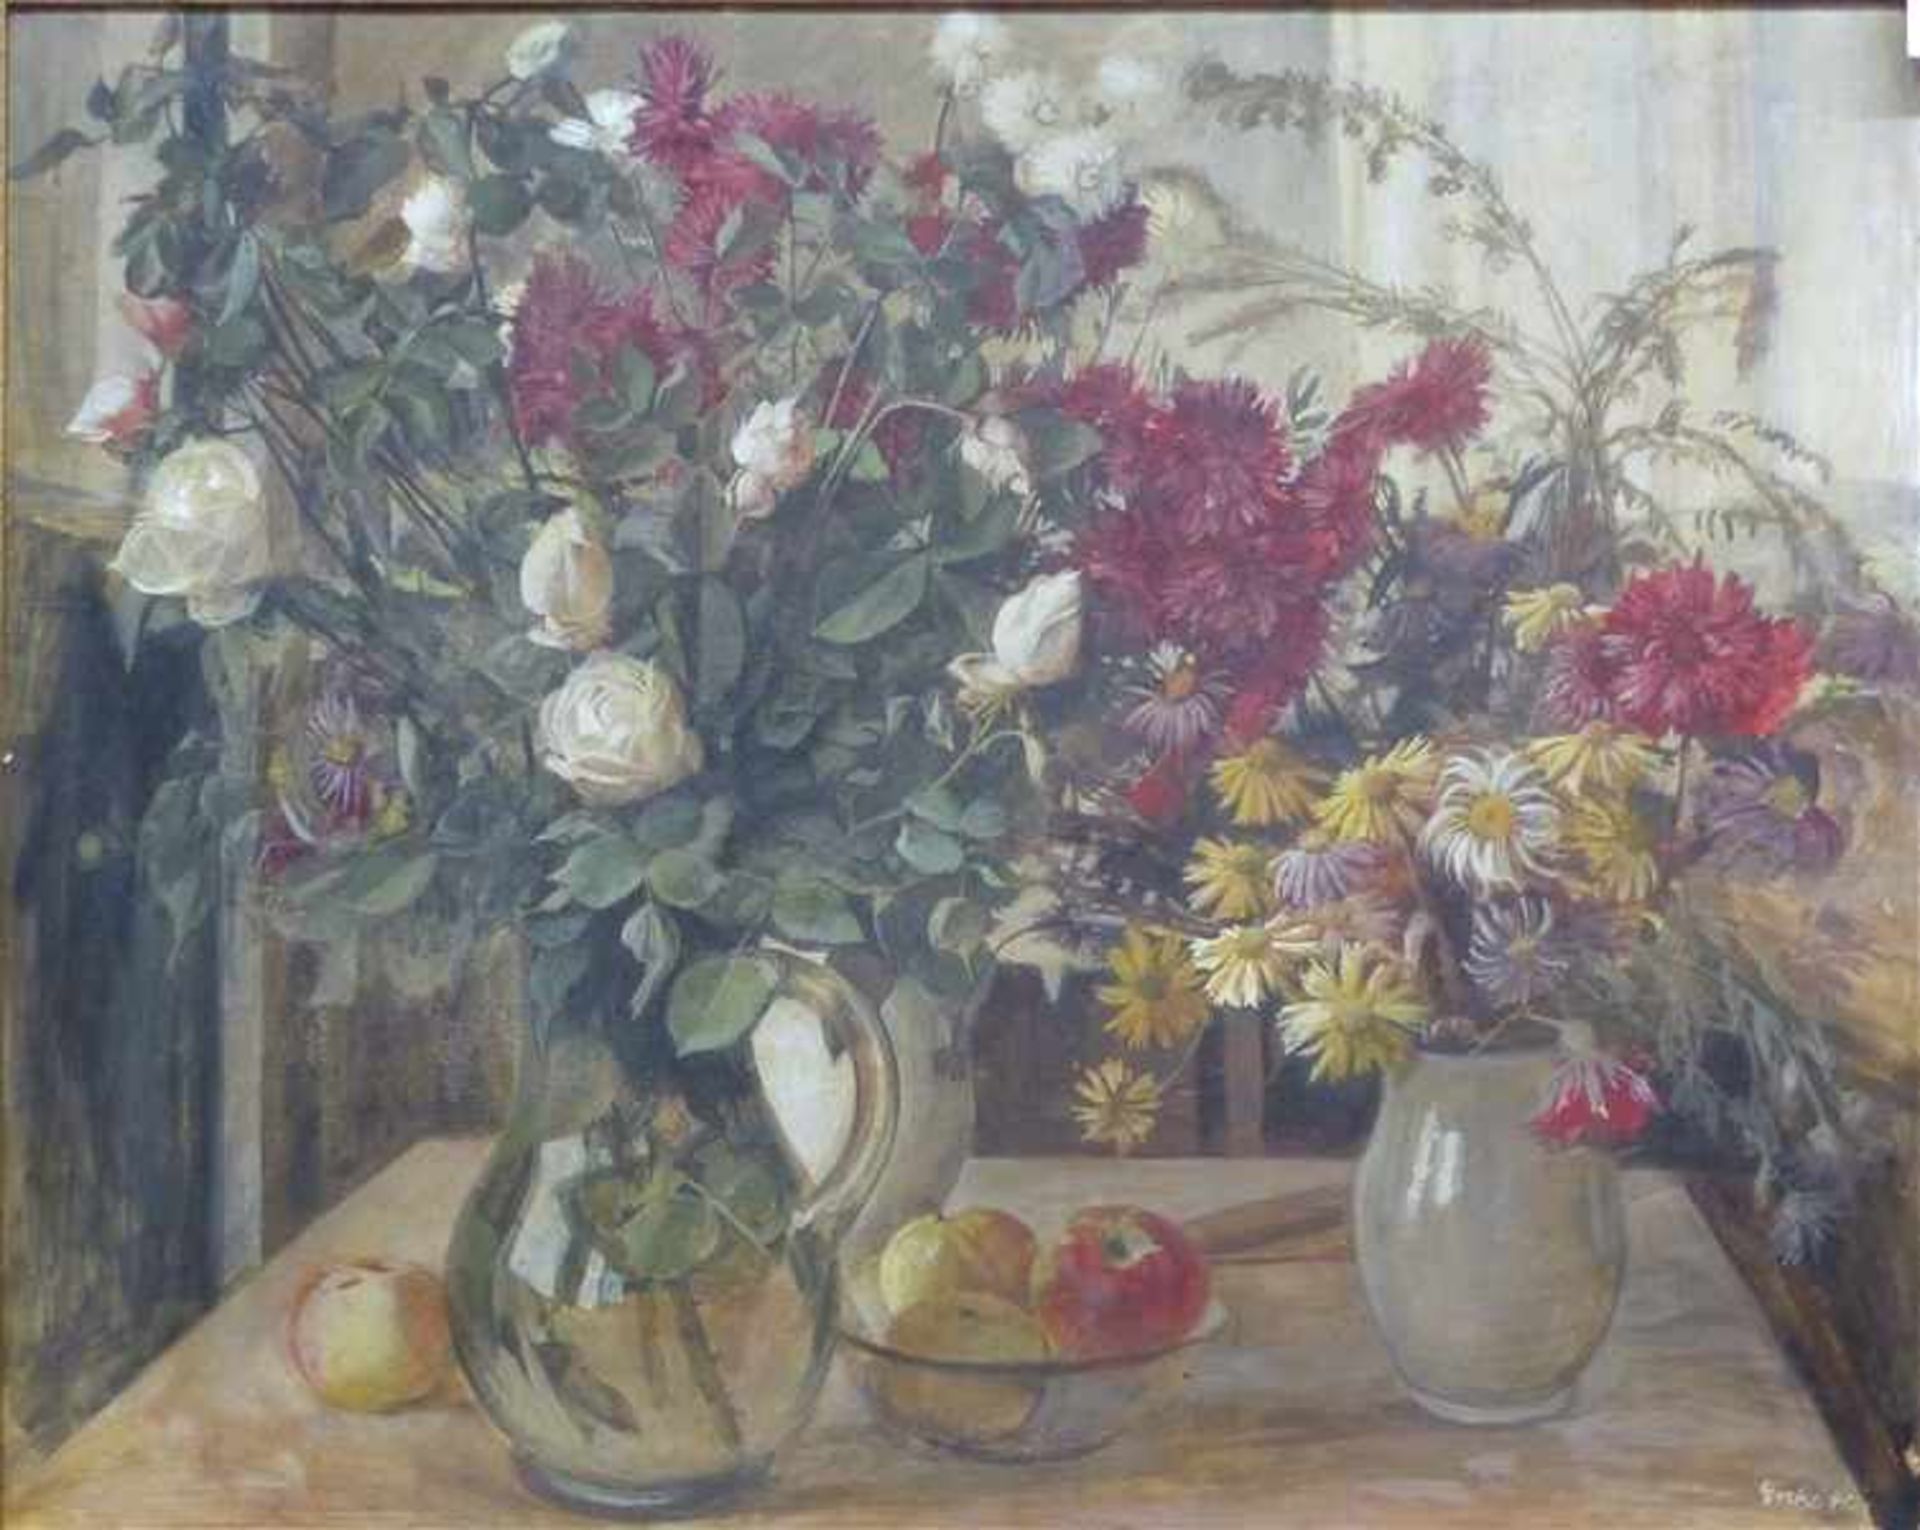 Esche, Emil1896 - 1948, Öl auf Holz, Stillleben mit Rosen und Wiesenblumen in den Vasen, dabei